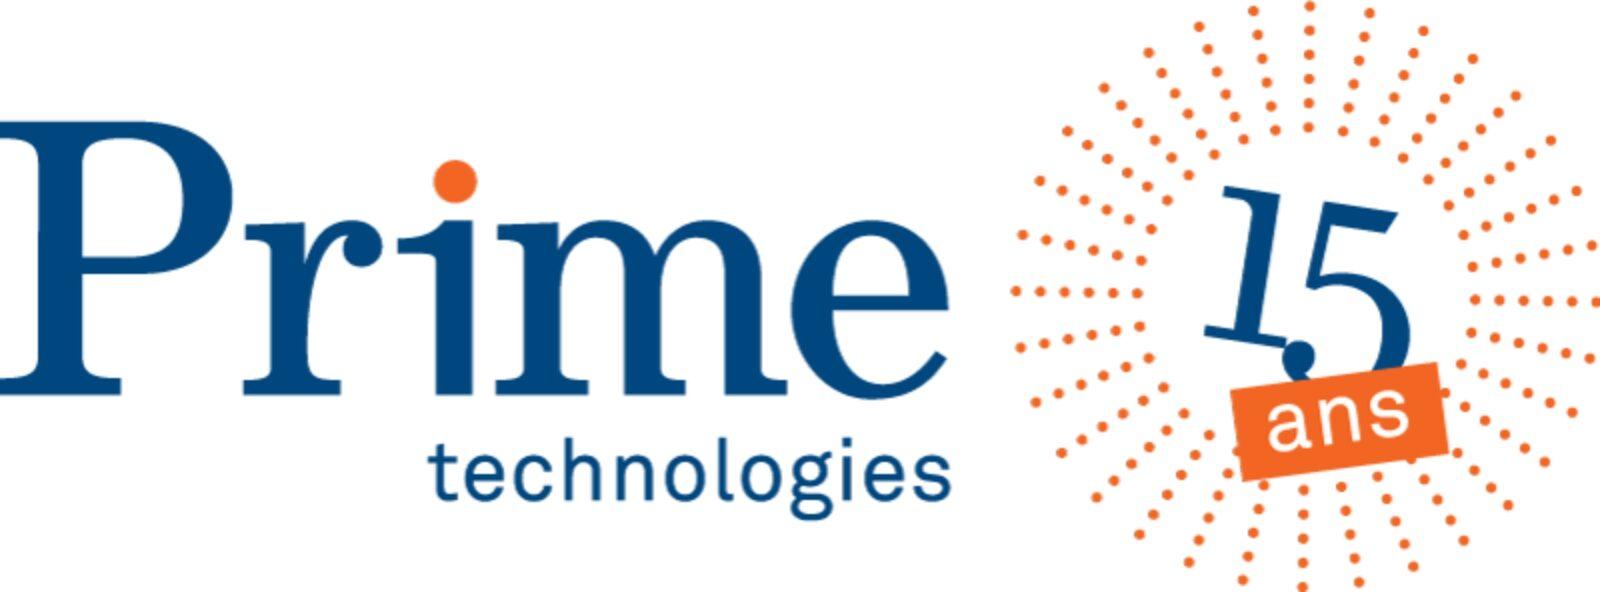 Prime Technologies SA